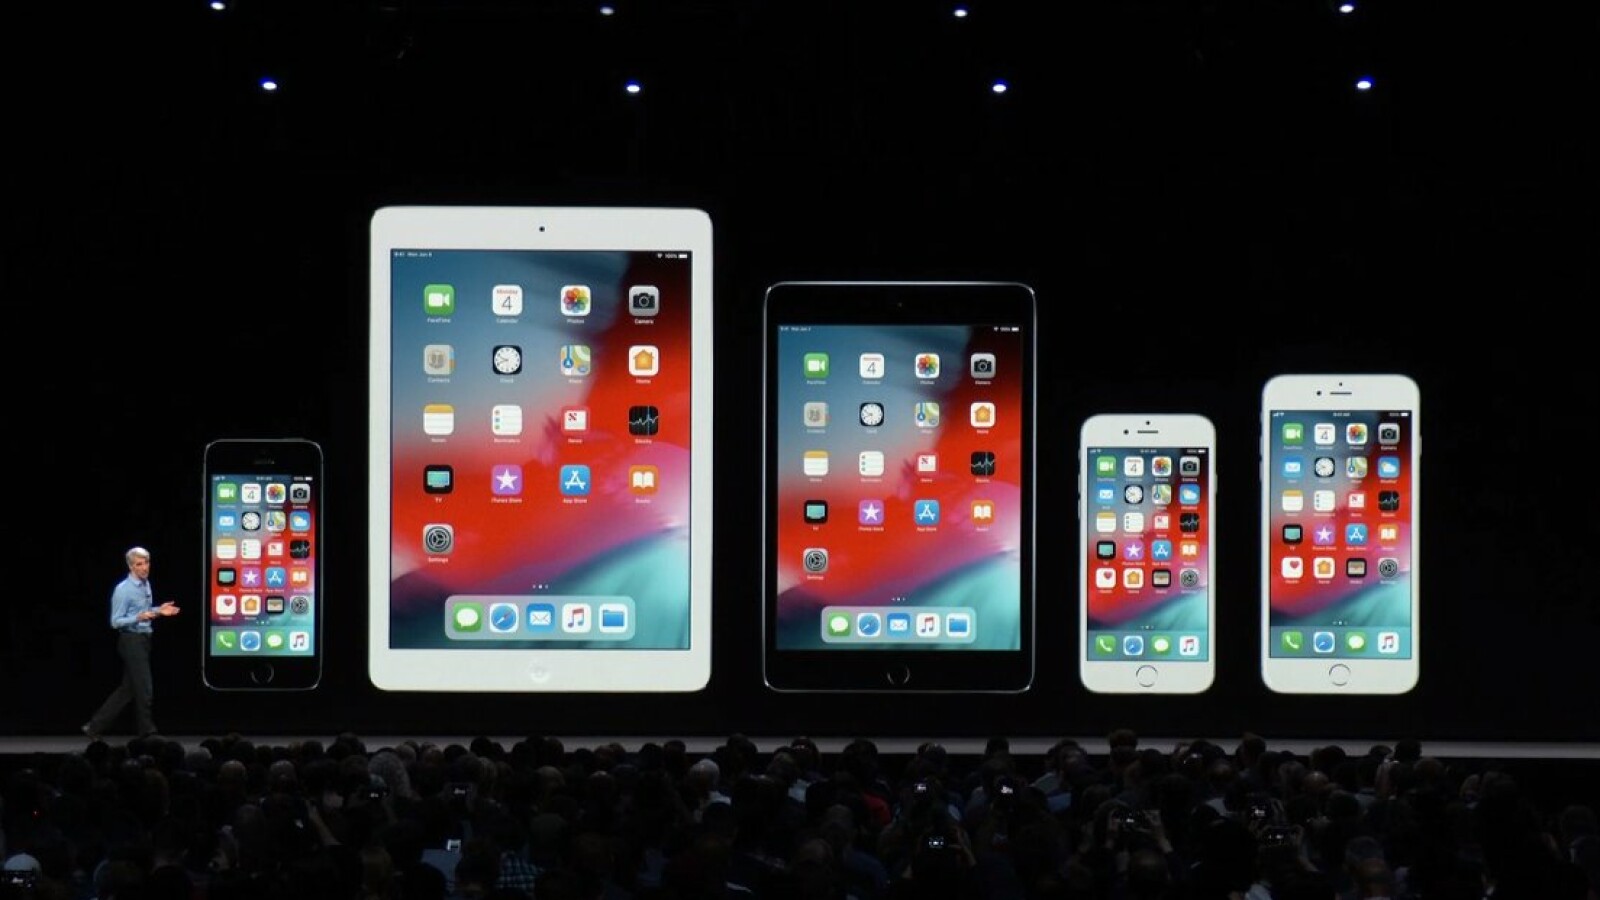 Apple iOS 12: Die erste Public Beta für iPhone und iPad ... - 1600 x 900 jpeg 141kB